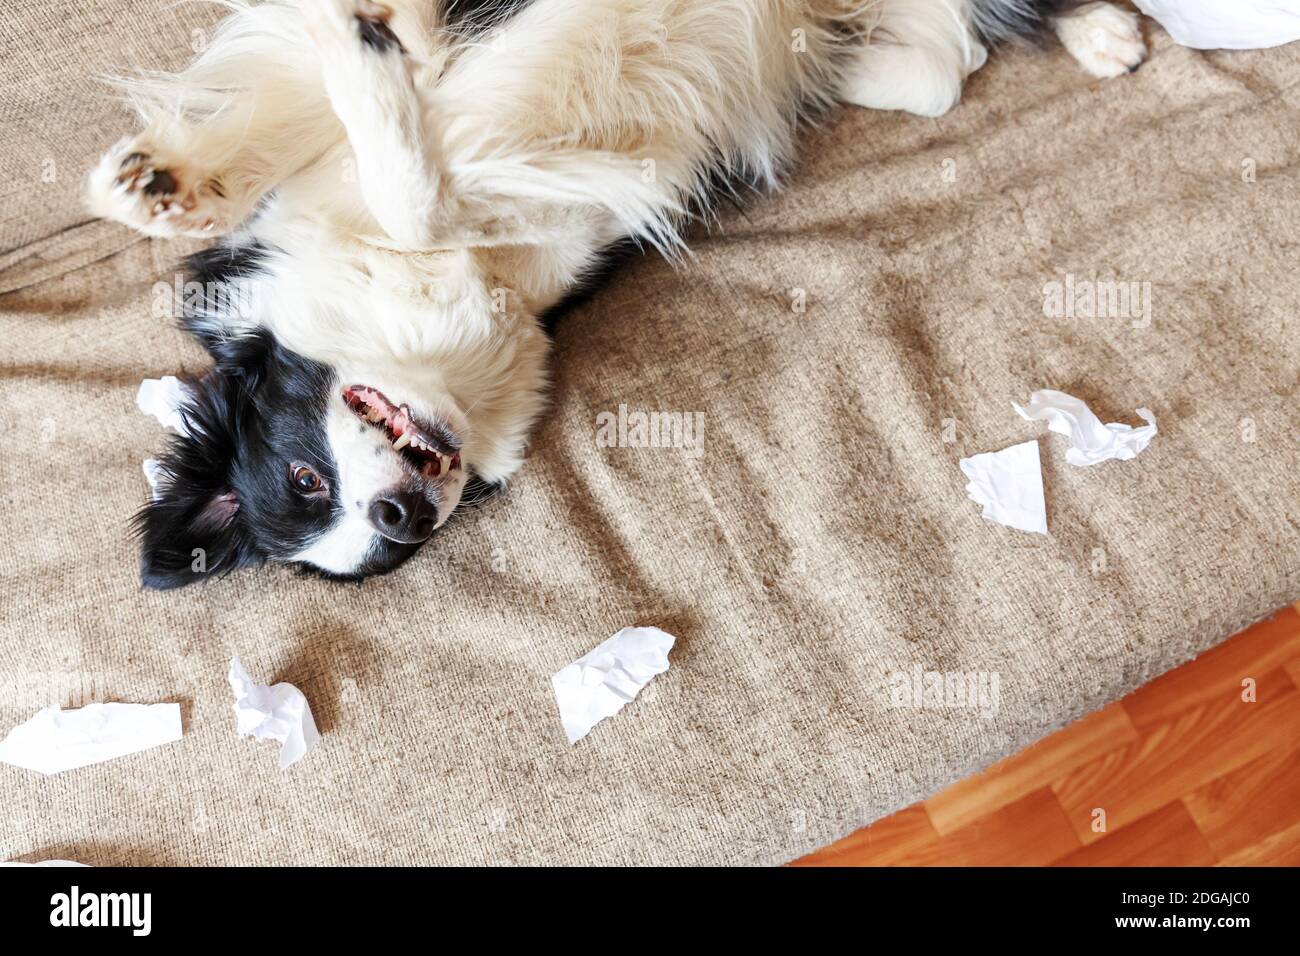 Naughty chien joueur bordure de chien de chiot collie après avoir mal piquant papier toilette couché sur le canapé à la maison. Coupable et détruit la salle de séjour. Dégâts désordonnés Banque D'Images